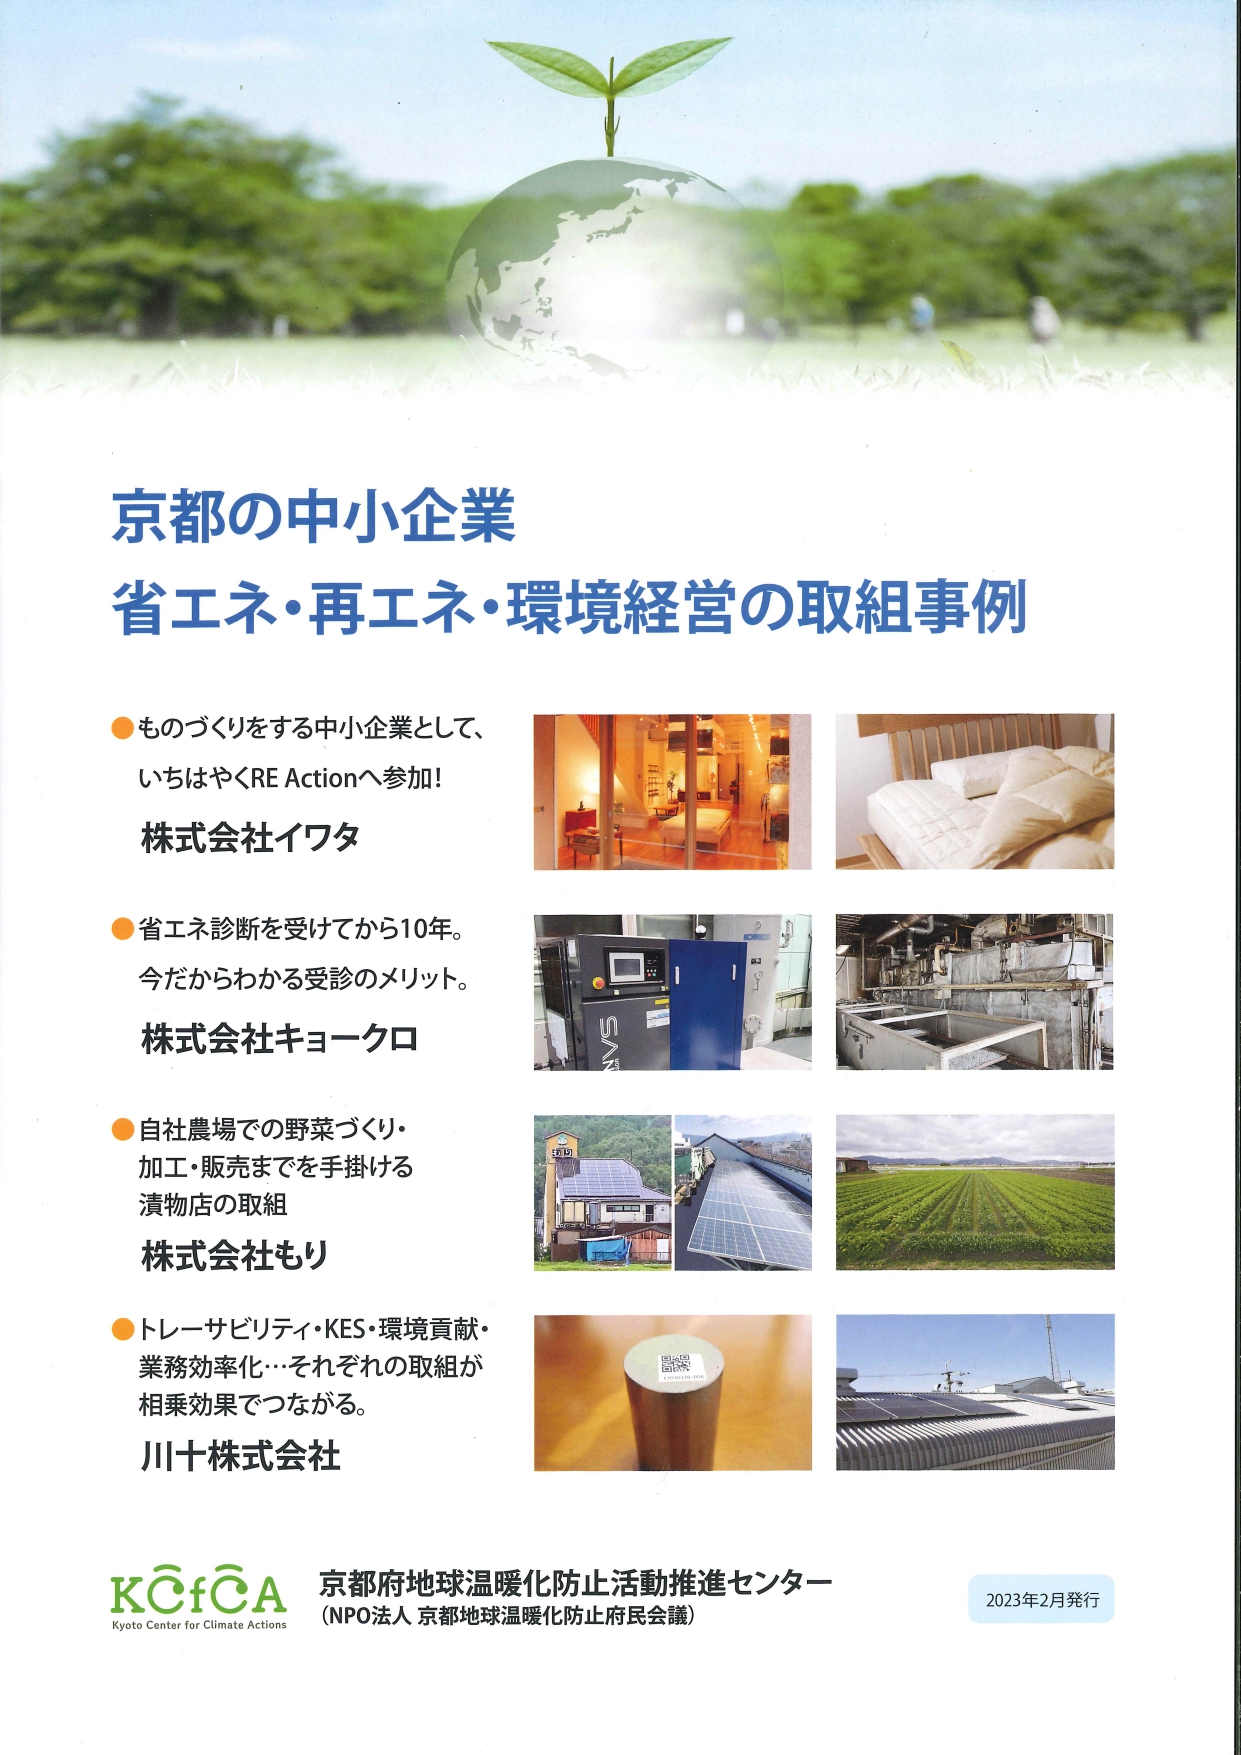 【掲載情報】京都府地球温暖化防止活動推進センター様に掲載されました。